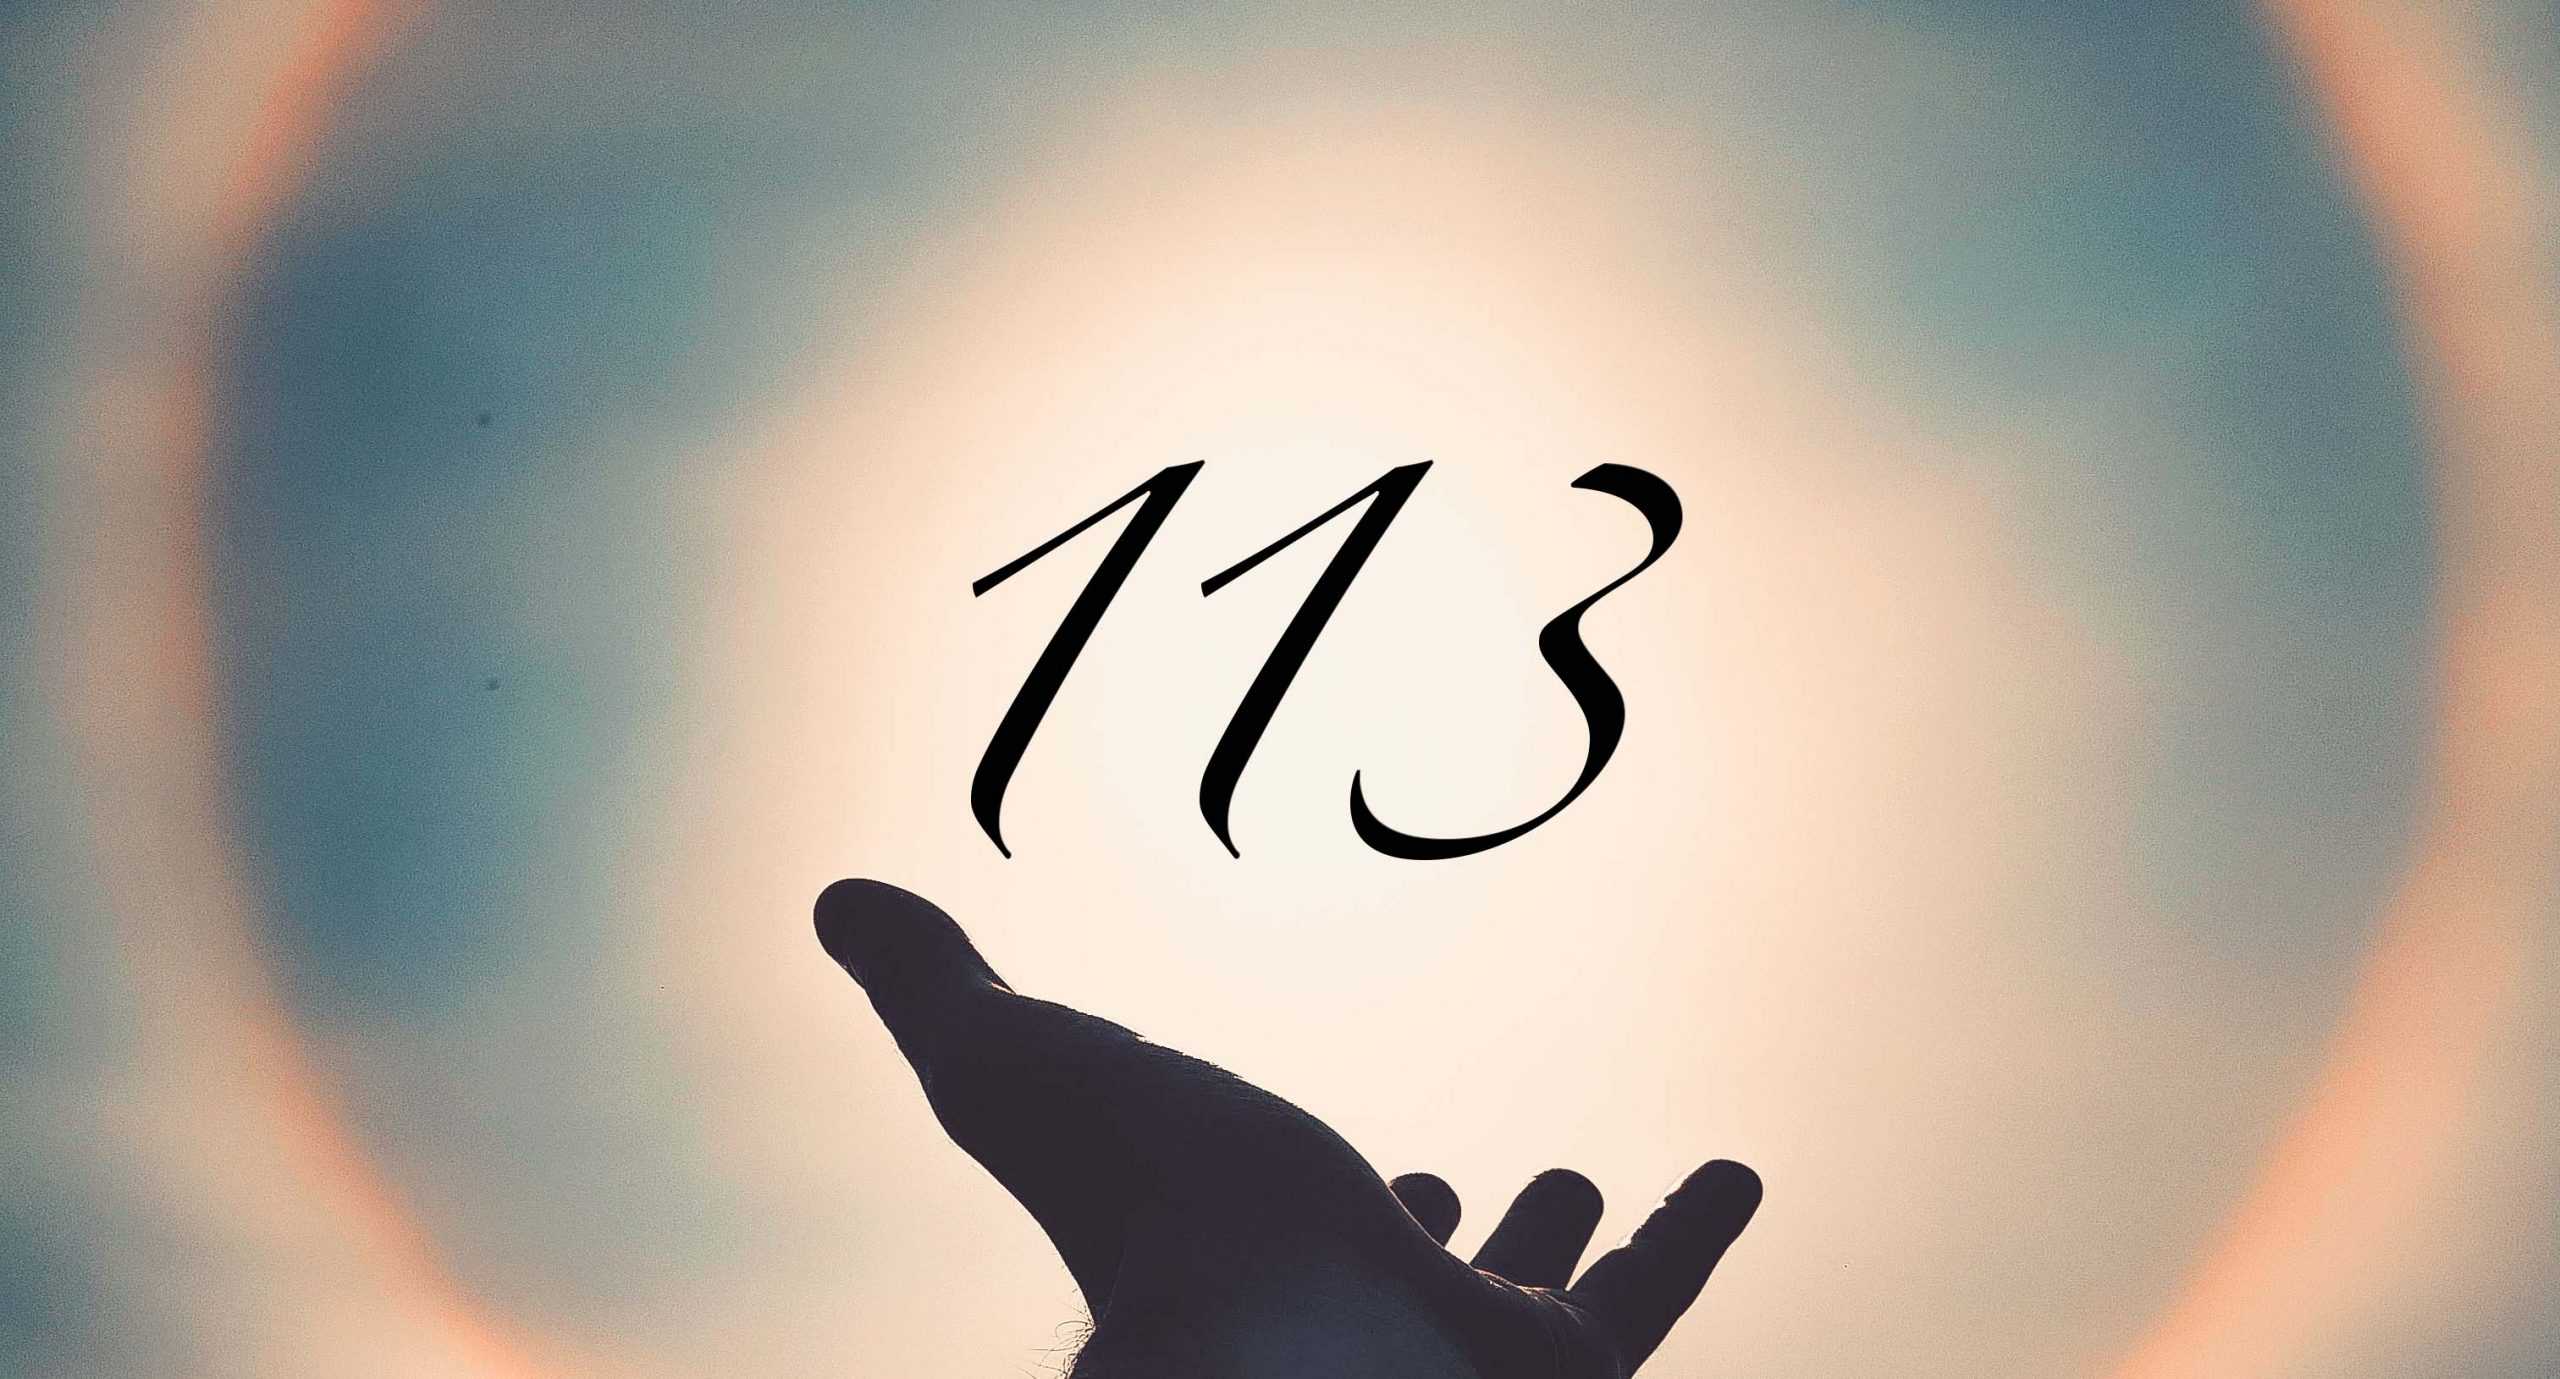 Signification du nombre 113